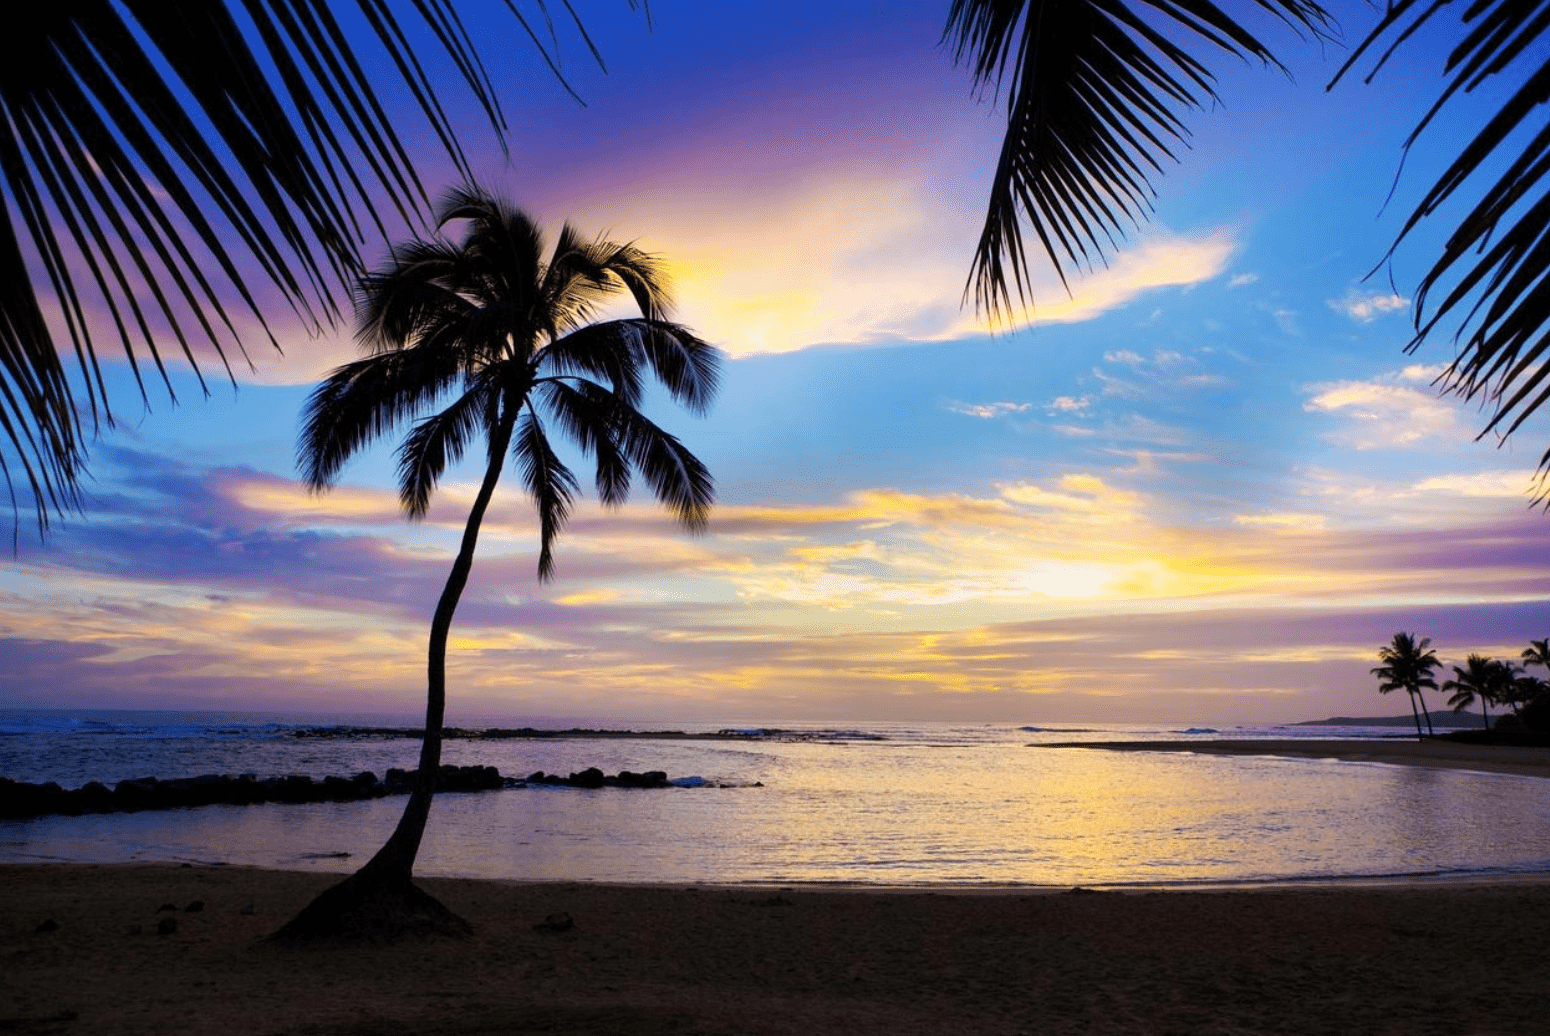 poipu beach kauai hawaii